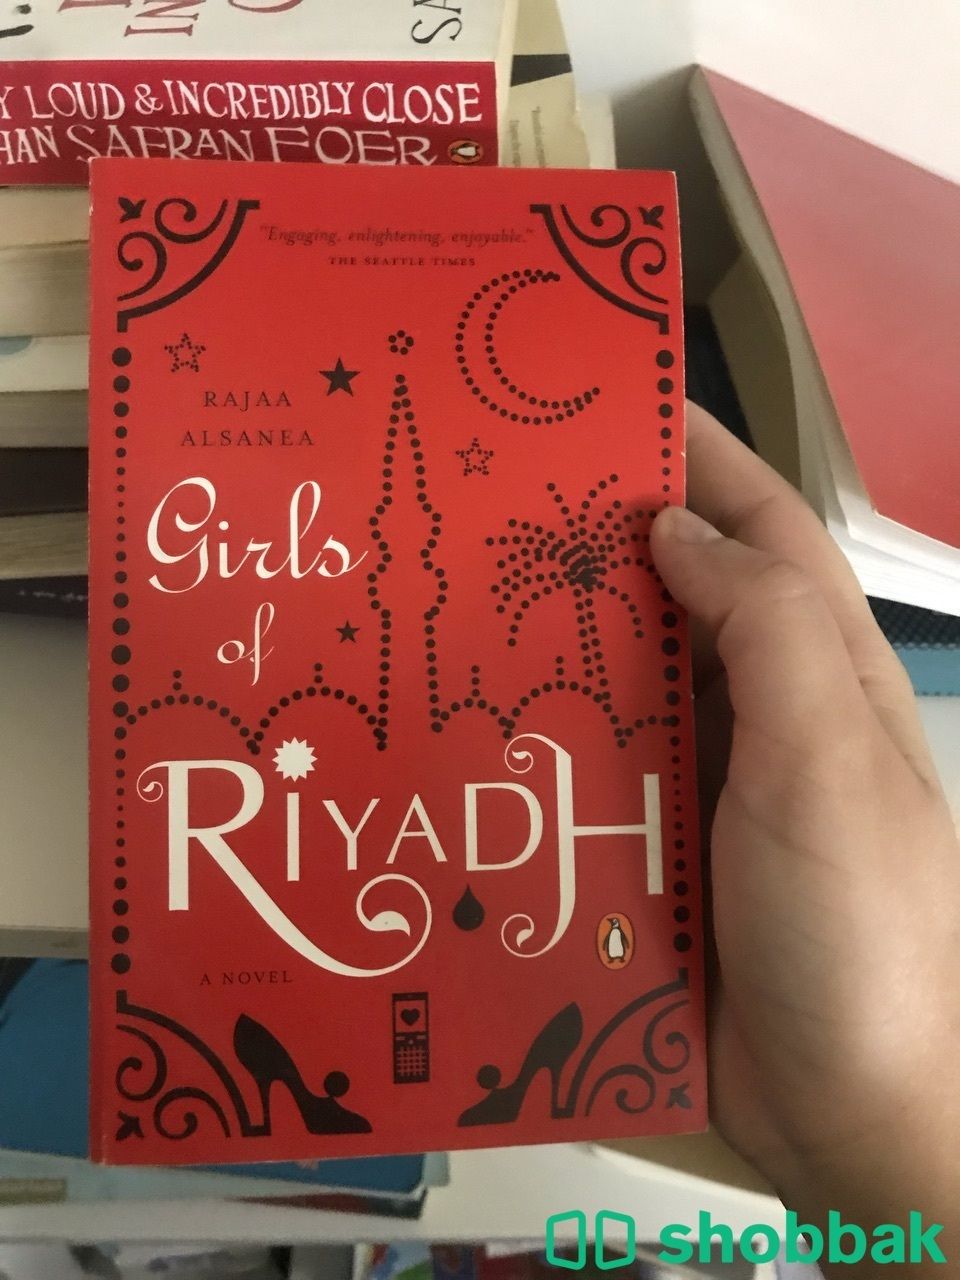 كتب مستعمله للبيع الكتاب الواحد ب 10 Shobbak Saudi Arabia